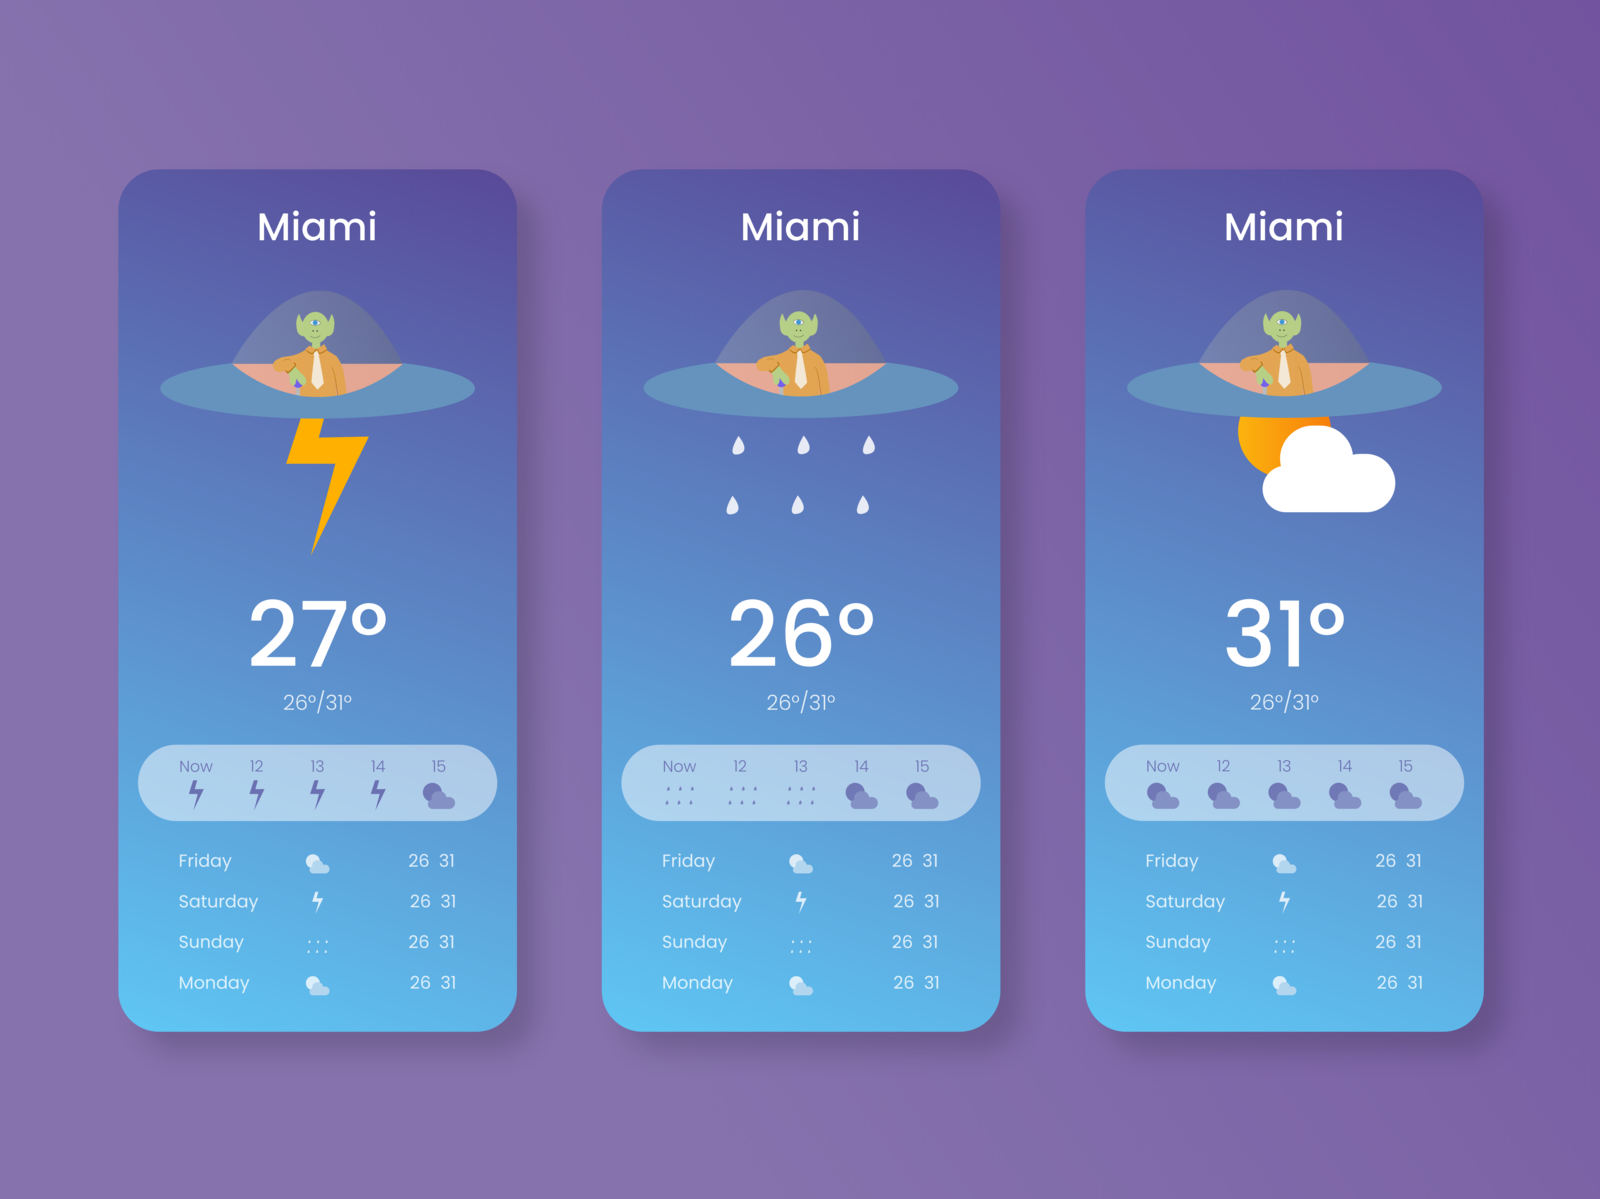 best weather radar app for macbook pro